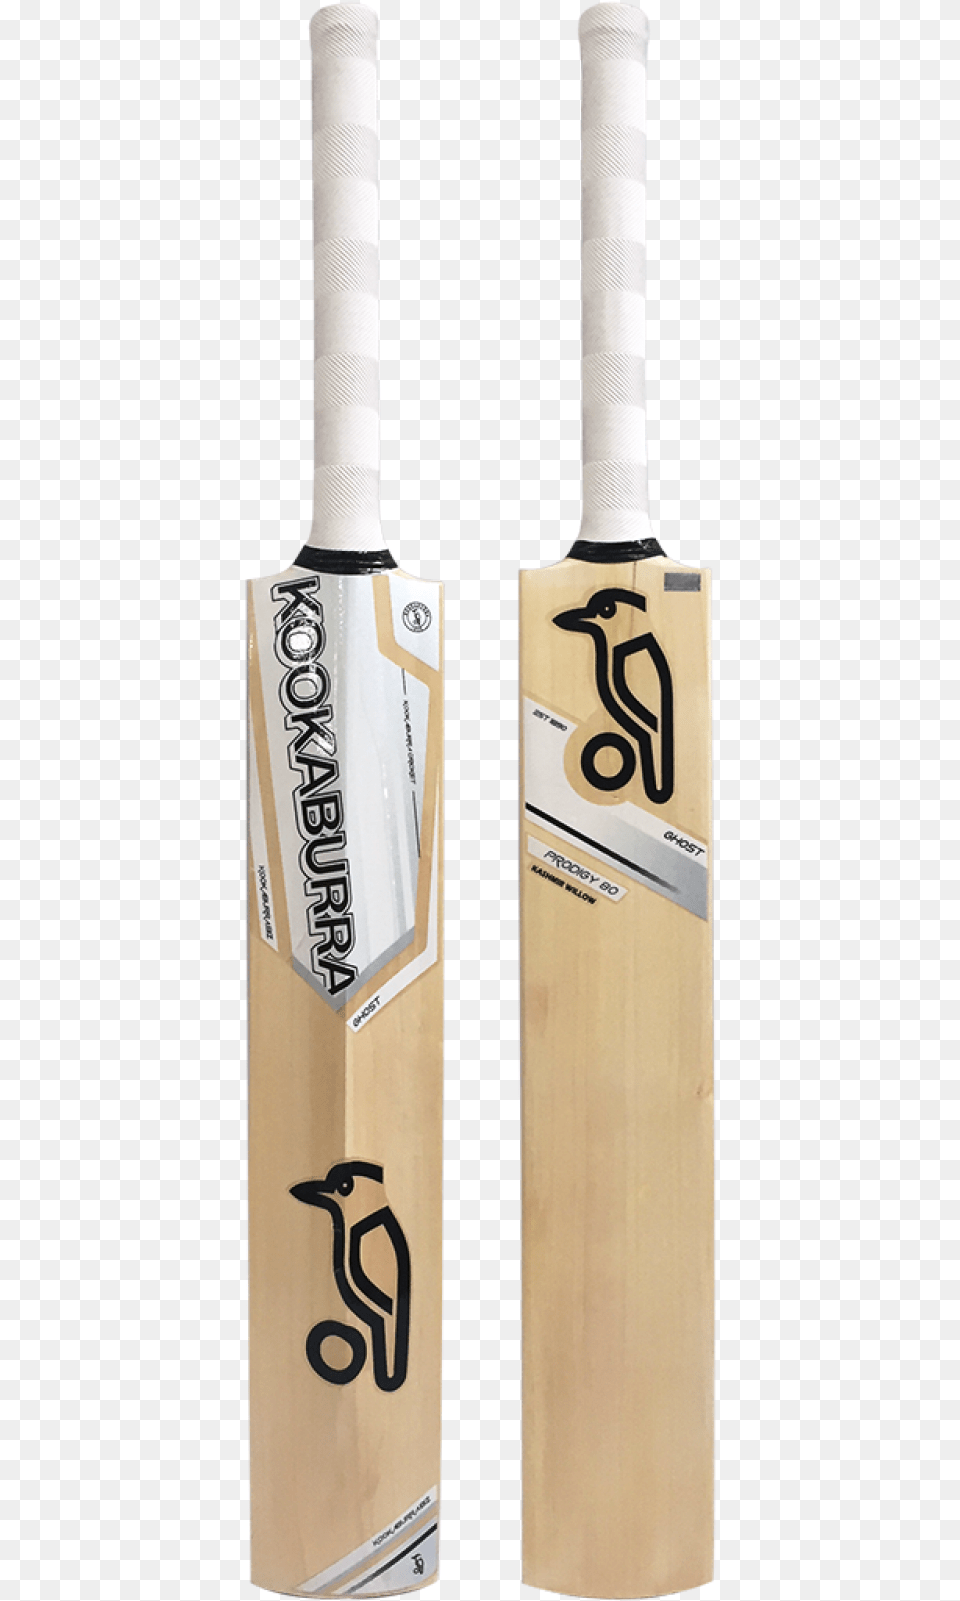 Kookaburra Cricket Bats, Text, Cricket Bat, Sport, Handwriting Free Transparent Png